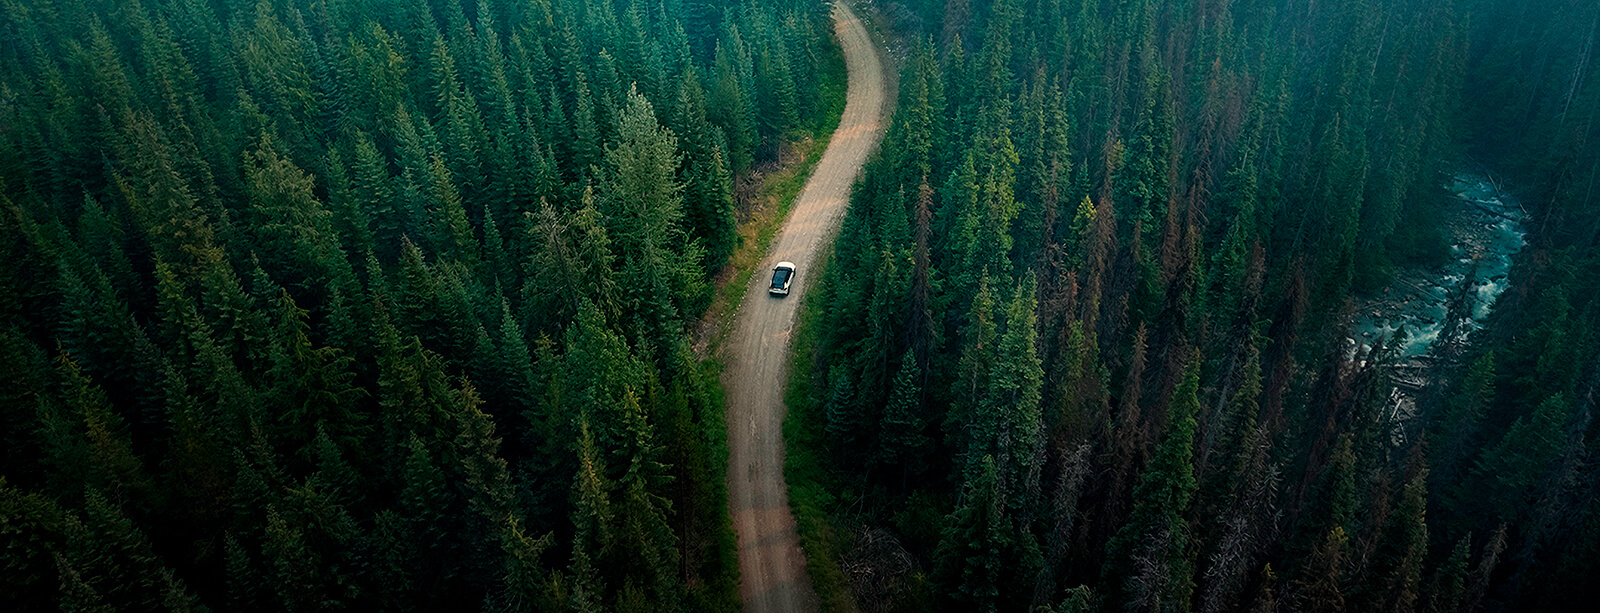 Toyota RAV4 på vägen omgiven av gröna skogar